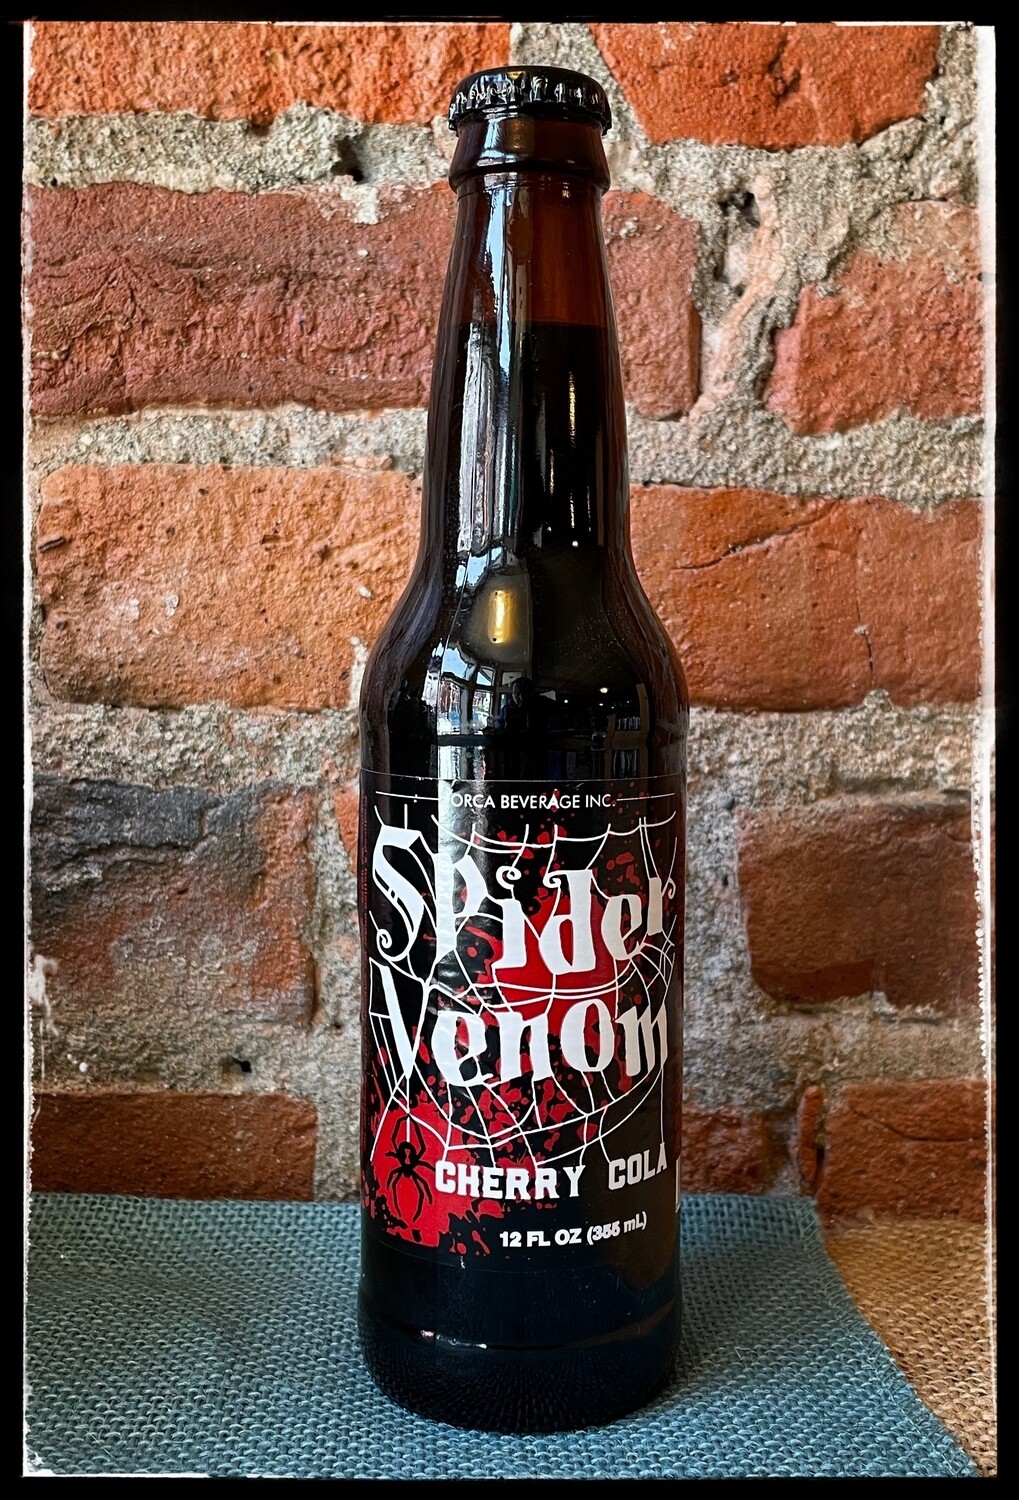 Spider Venom Cherry Cola